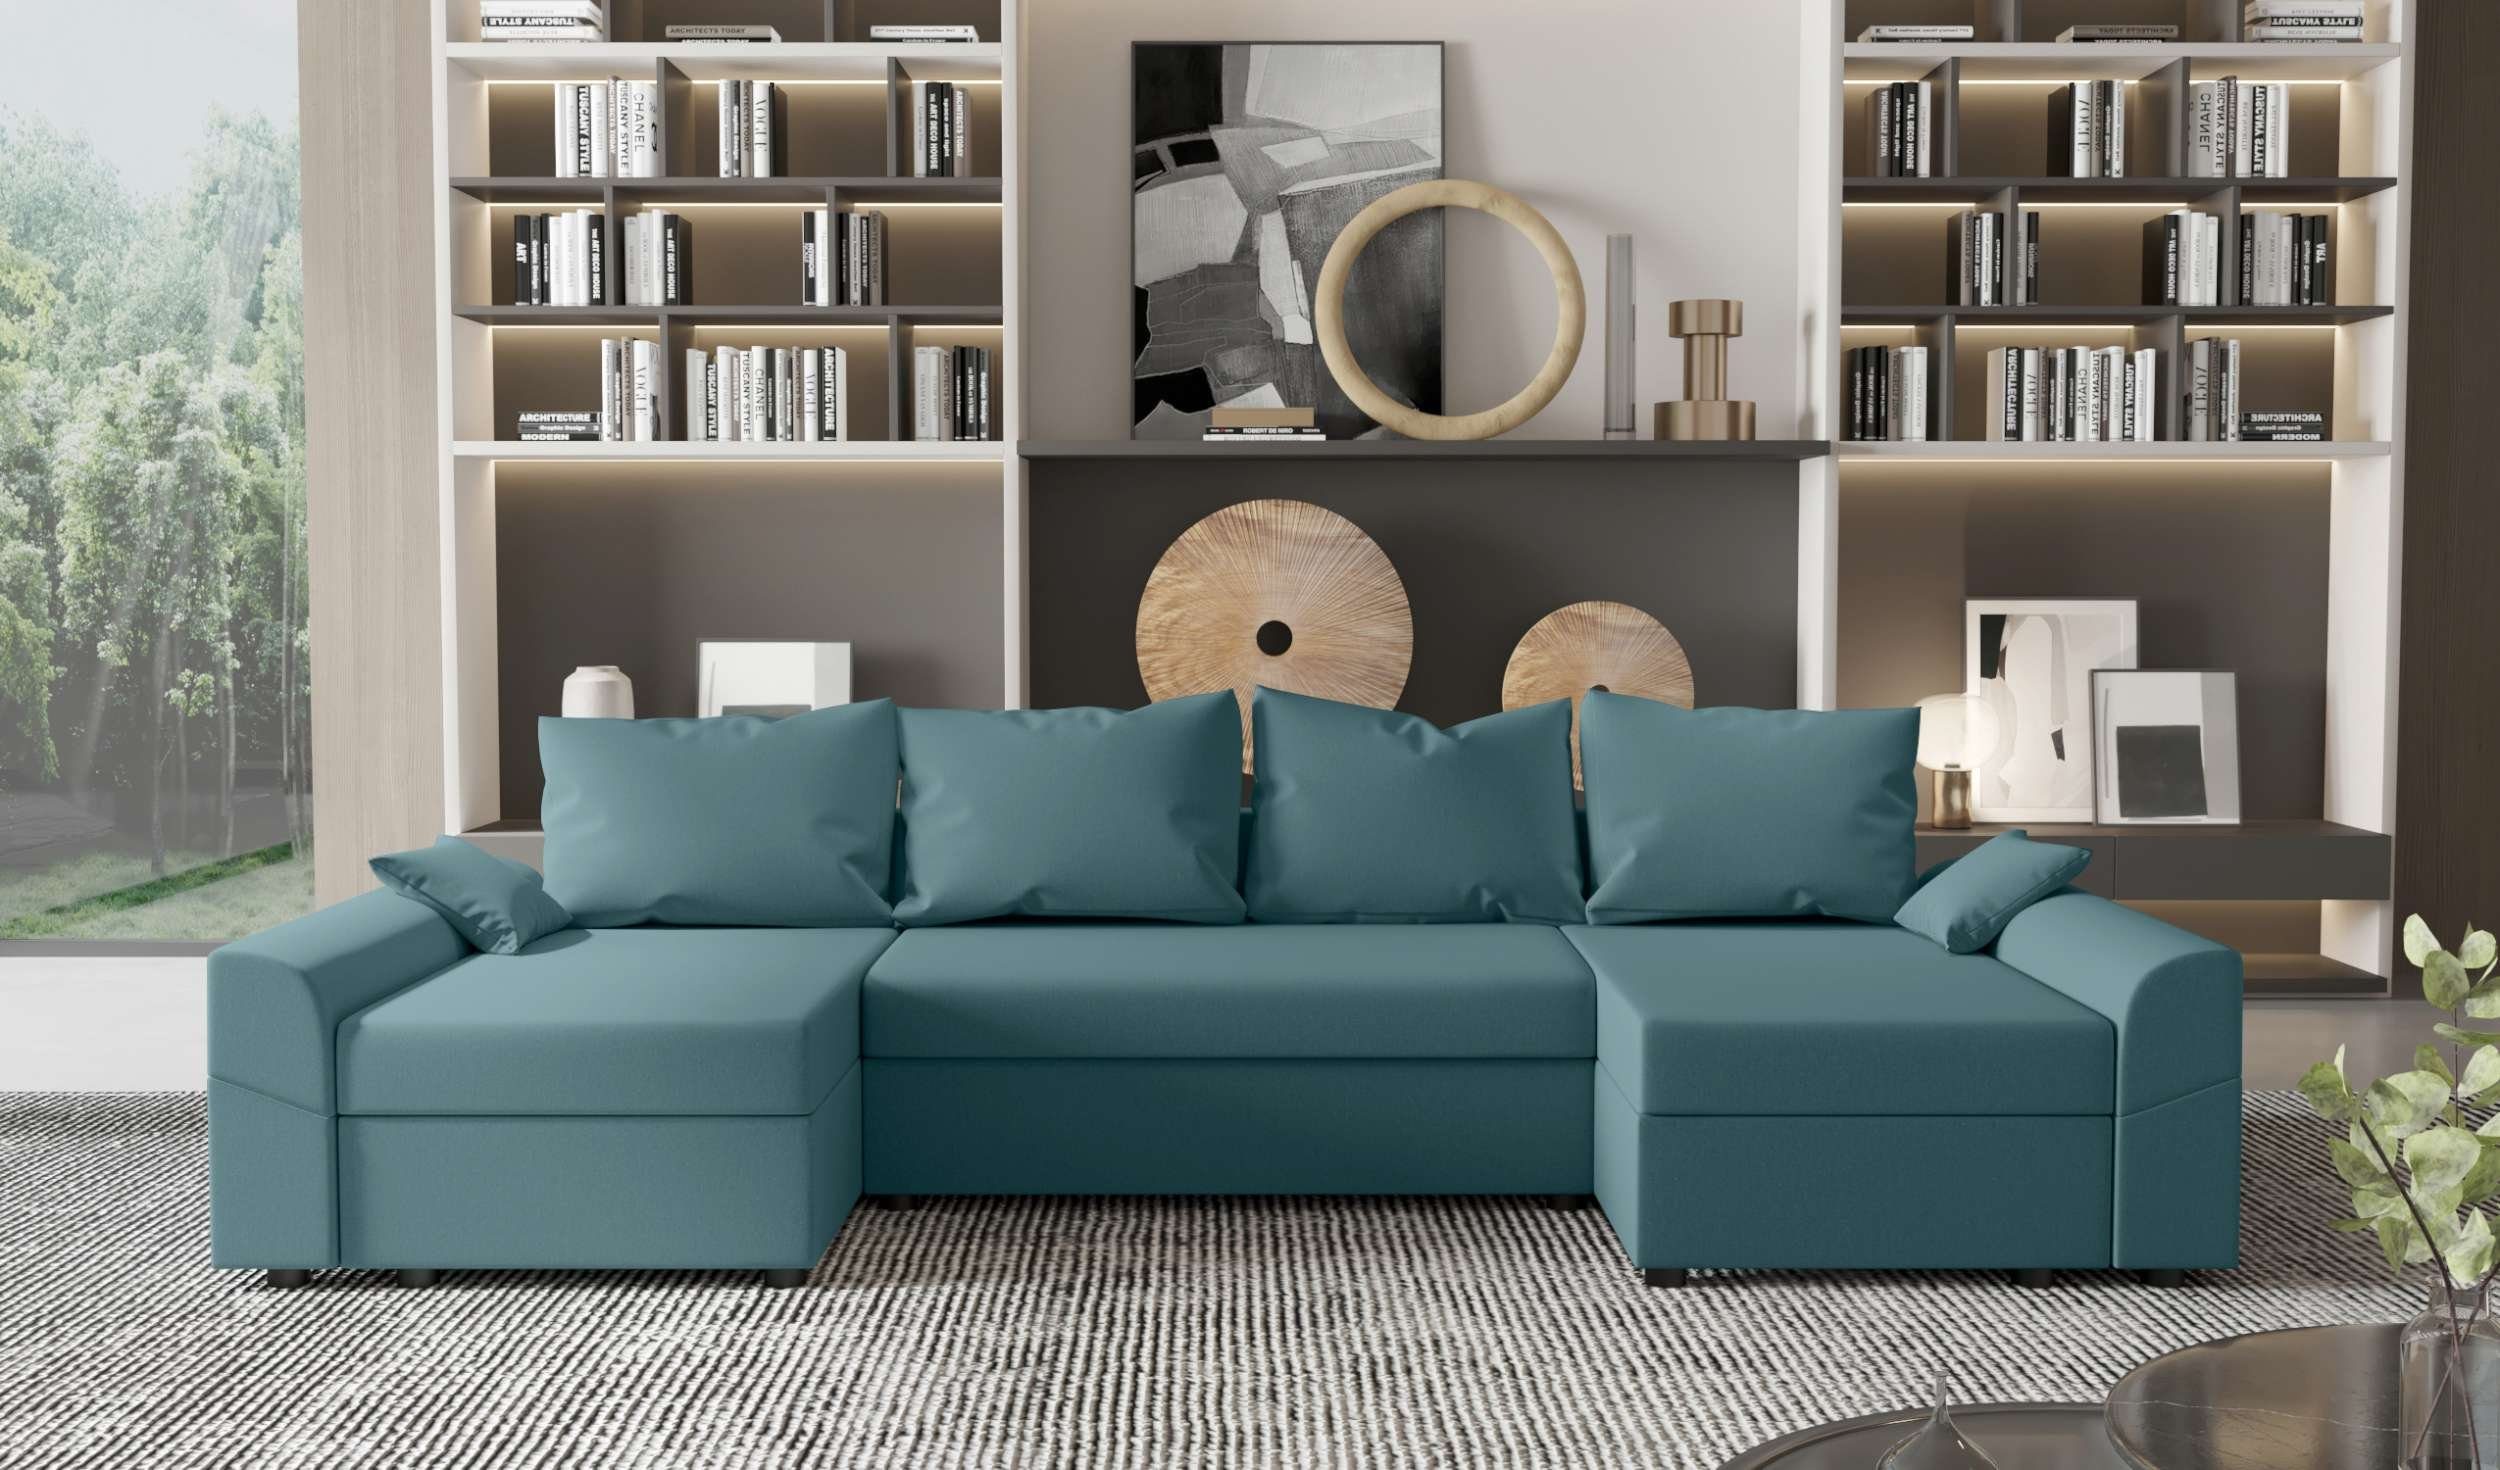 Sofa, Design Carolina, mit Wohnlandschaft Bettkasten, U-Form, Sitzkomfort, Modern Stylefy Bettfunktion, Eckcouch, mit